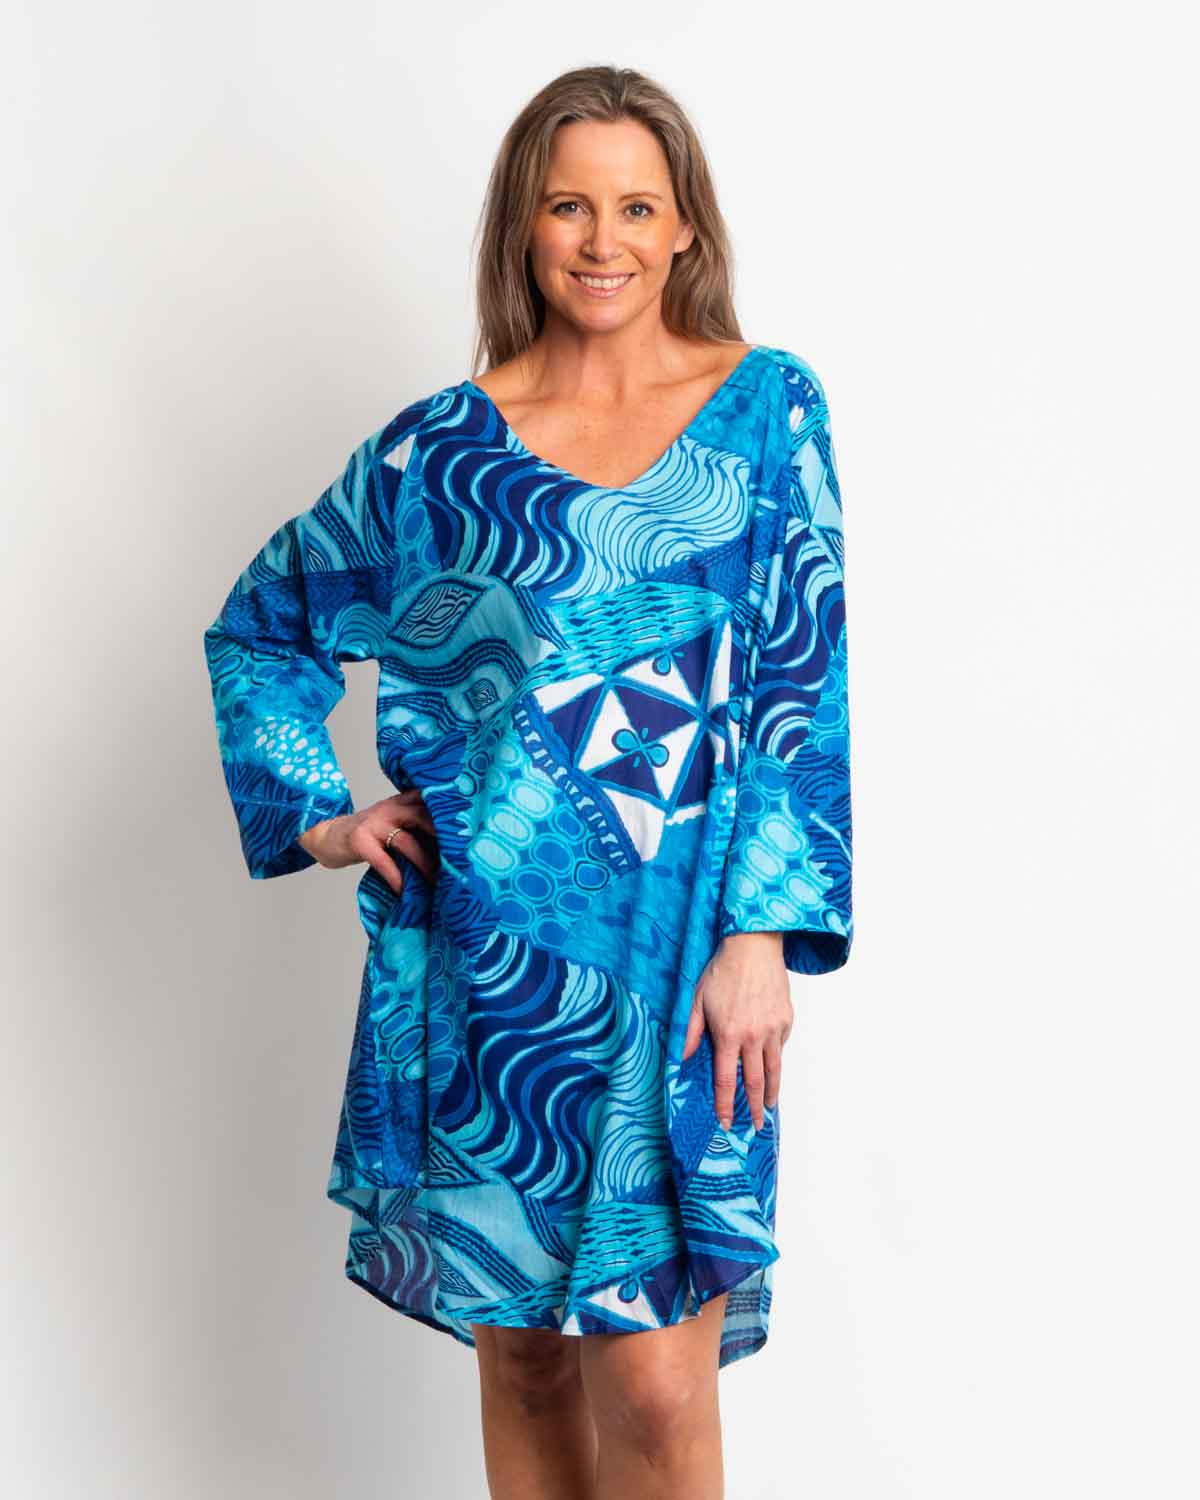 Free Size Proserpine Dress in Blue Festival Print